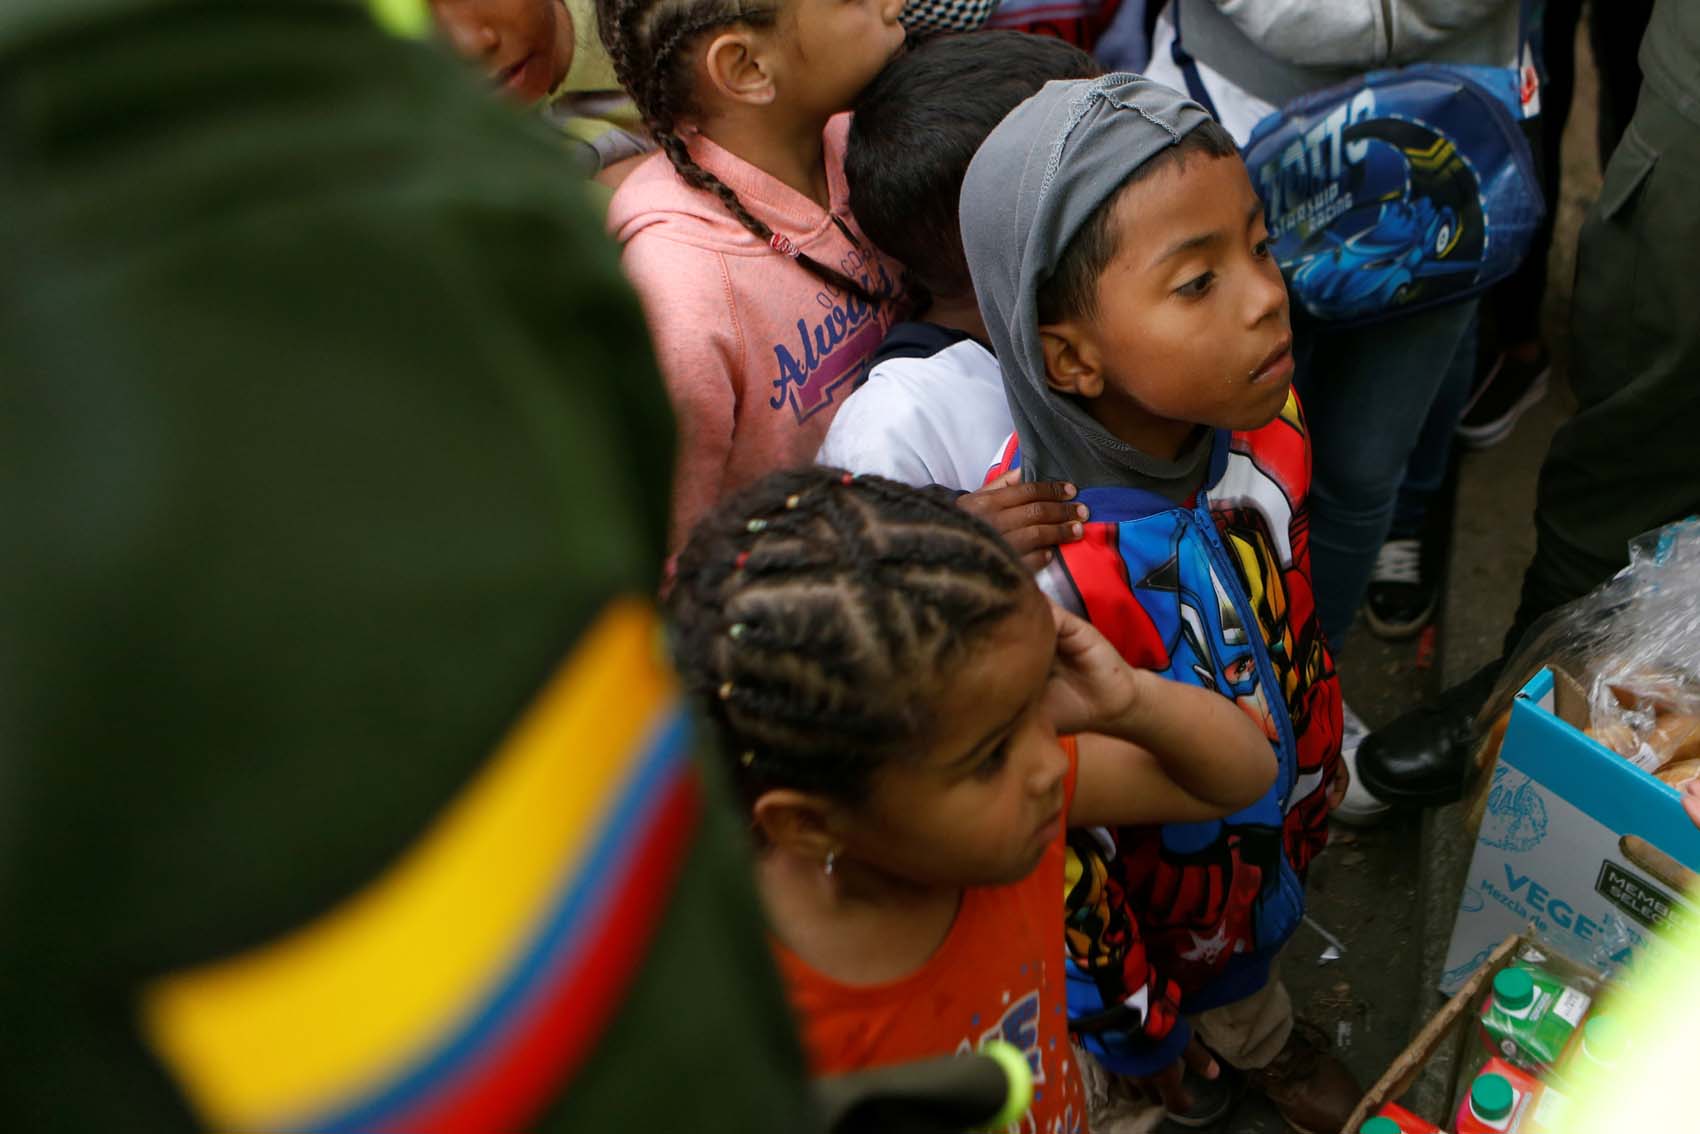 A la sombra de su sueño, venezolanos acampan en Bogotá mientras esperan un futuro (fotos)